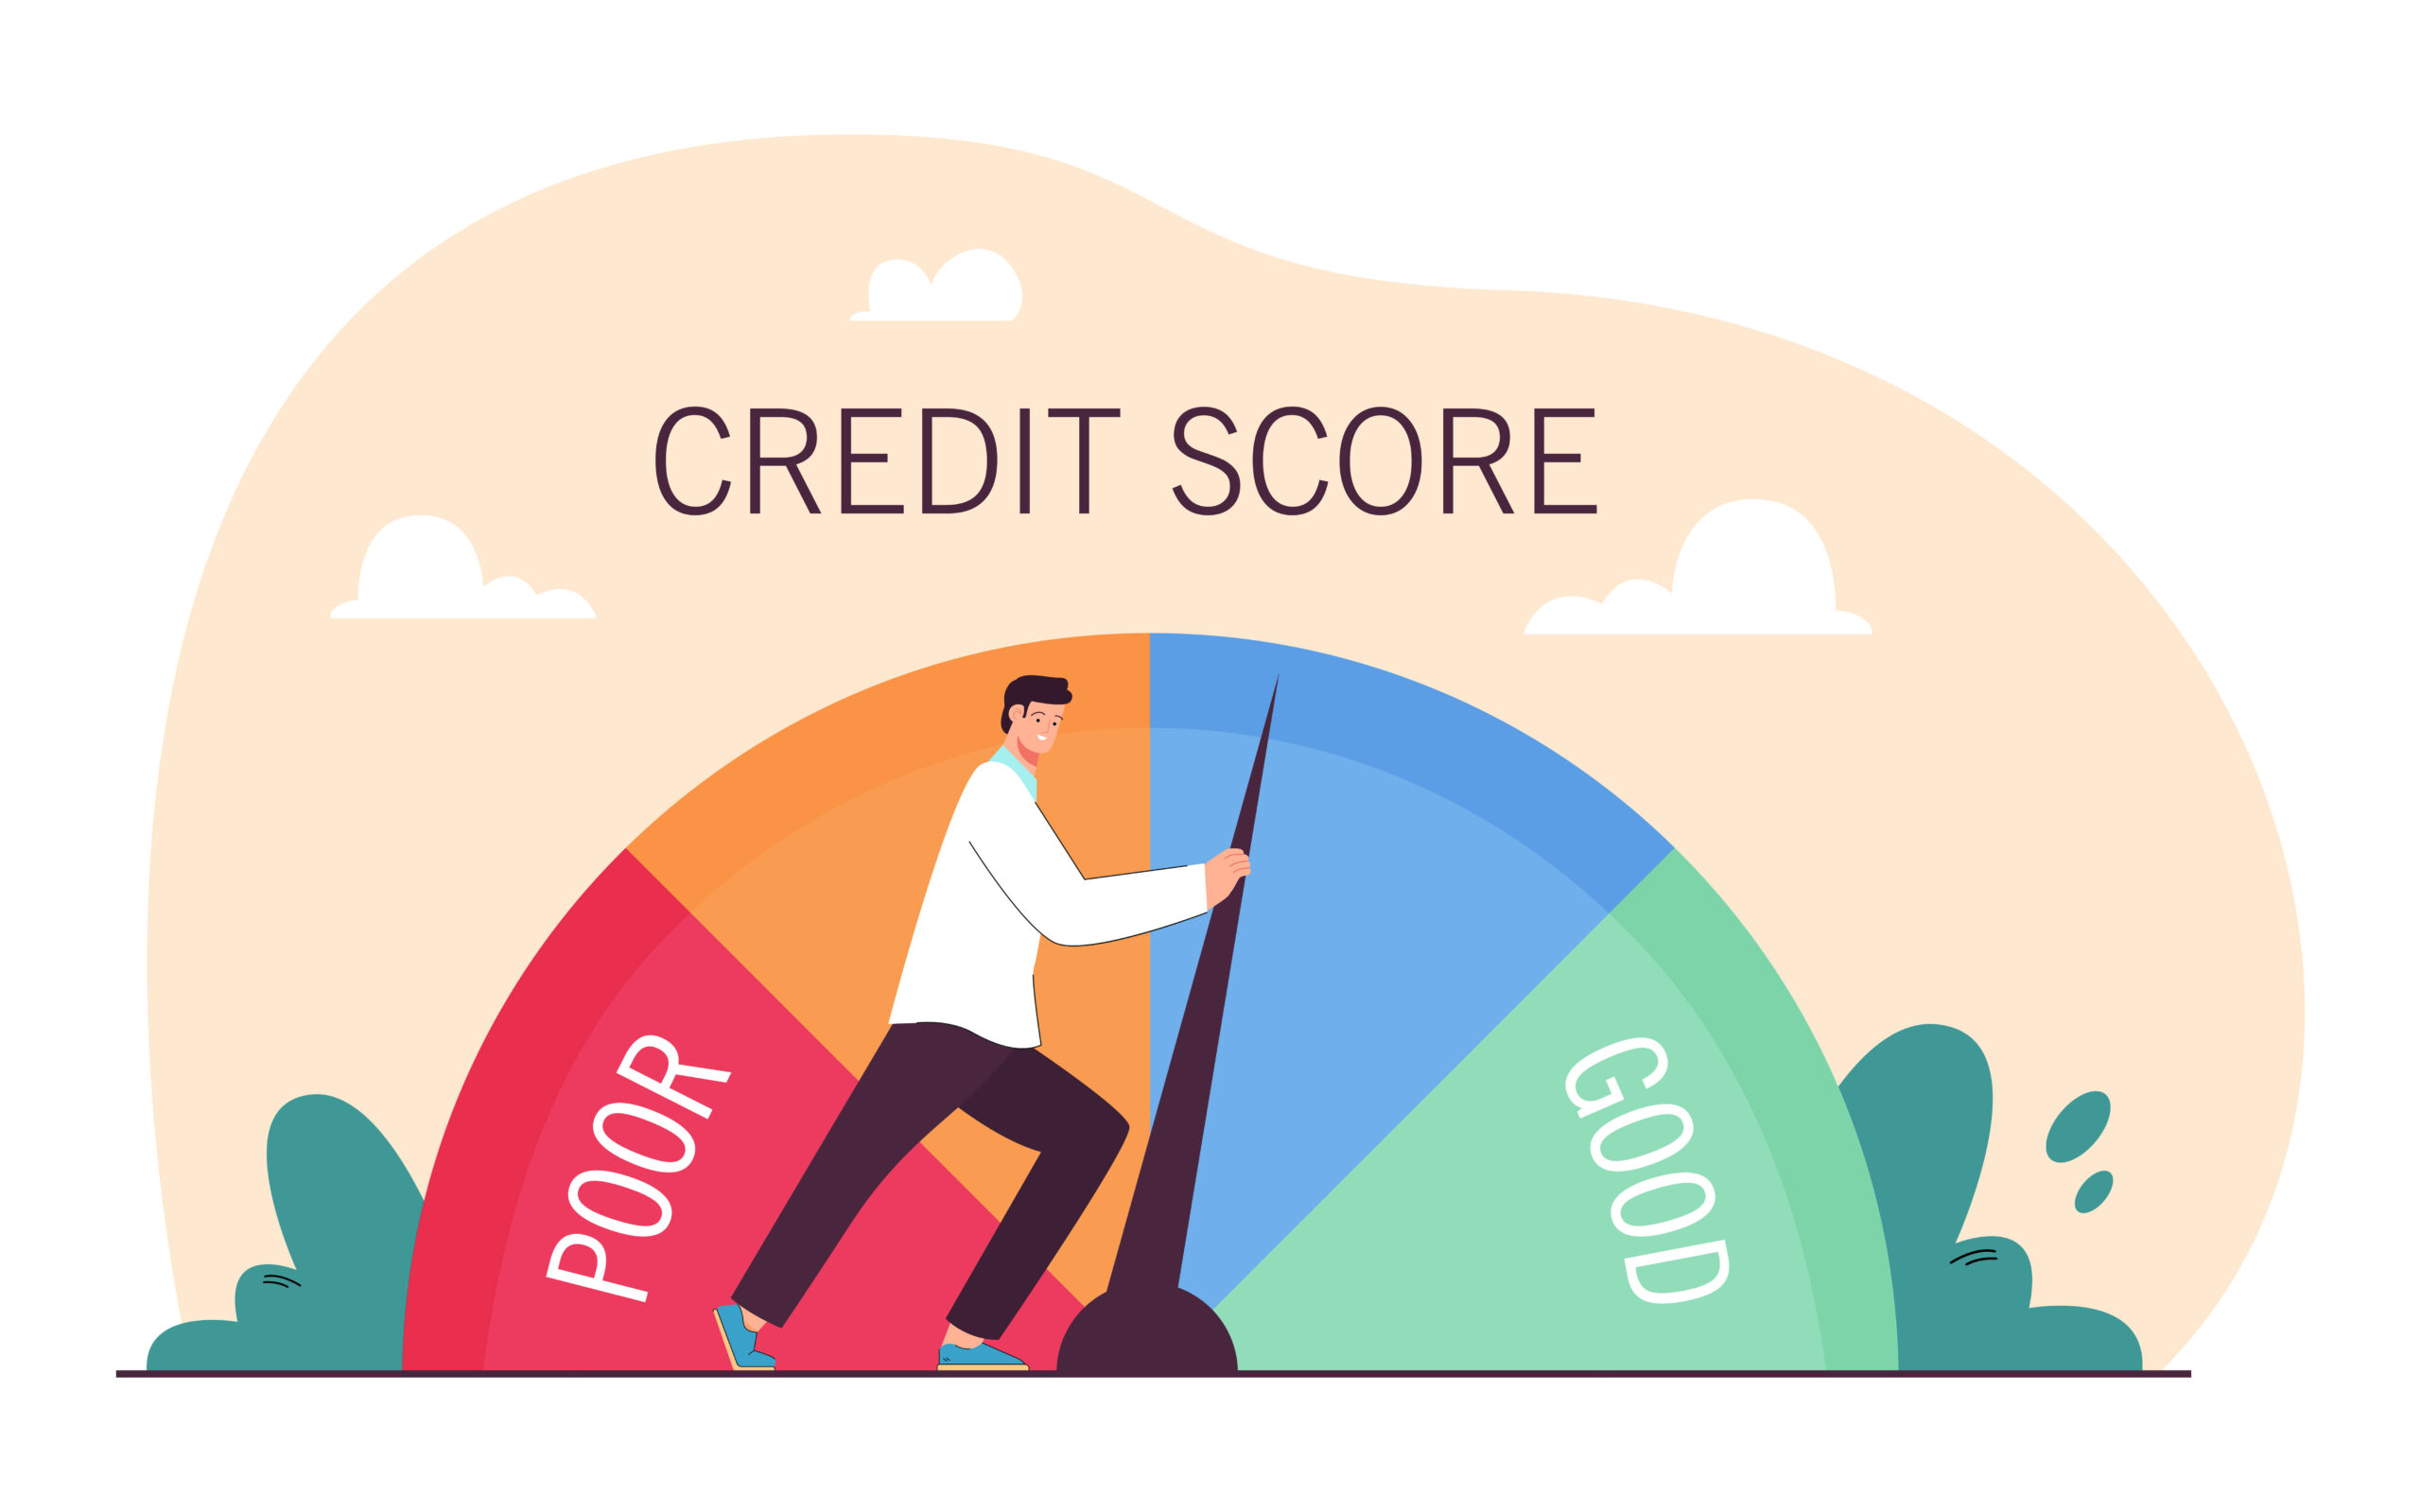 Credit Score meter